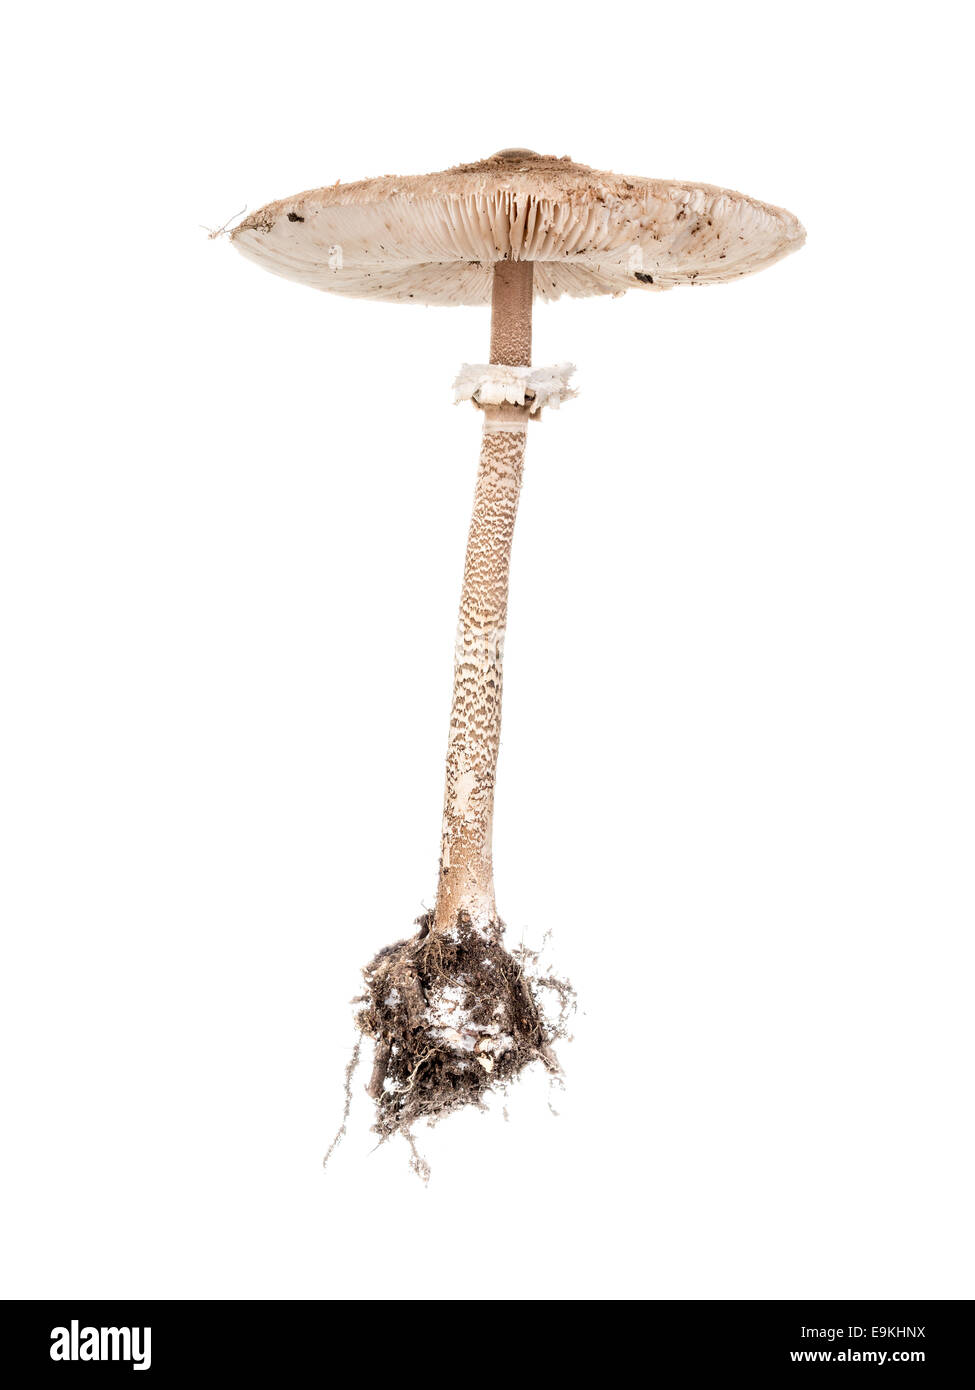 Parasol Fungus mushroom shot on white background Stock Photo